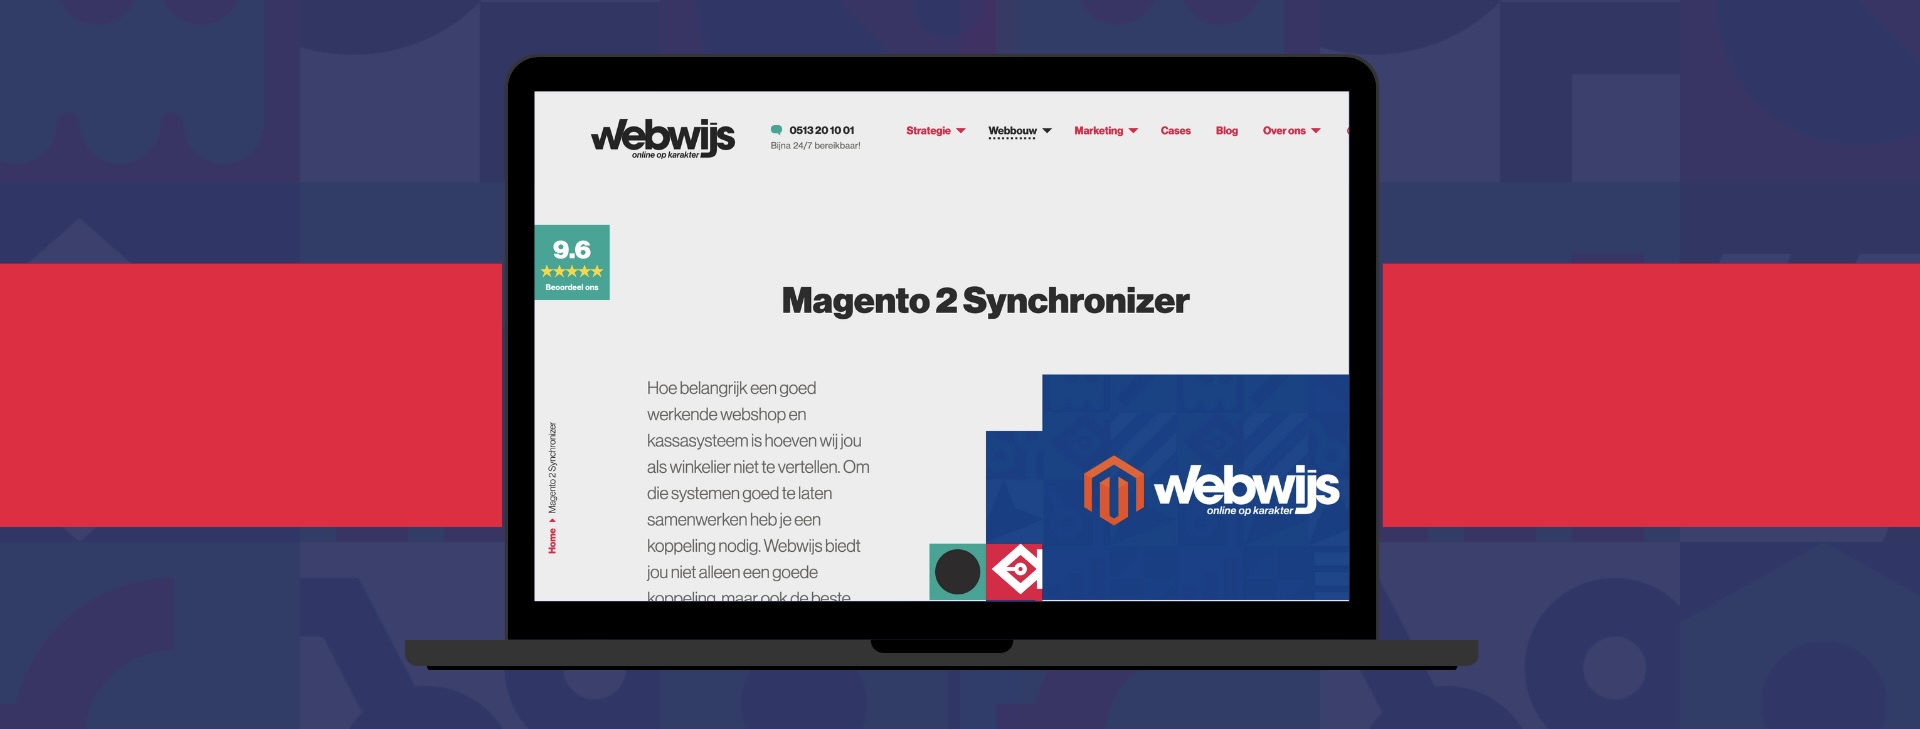 Dienst-Magento-2-Synchronizer-Webwijs